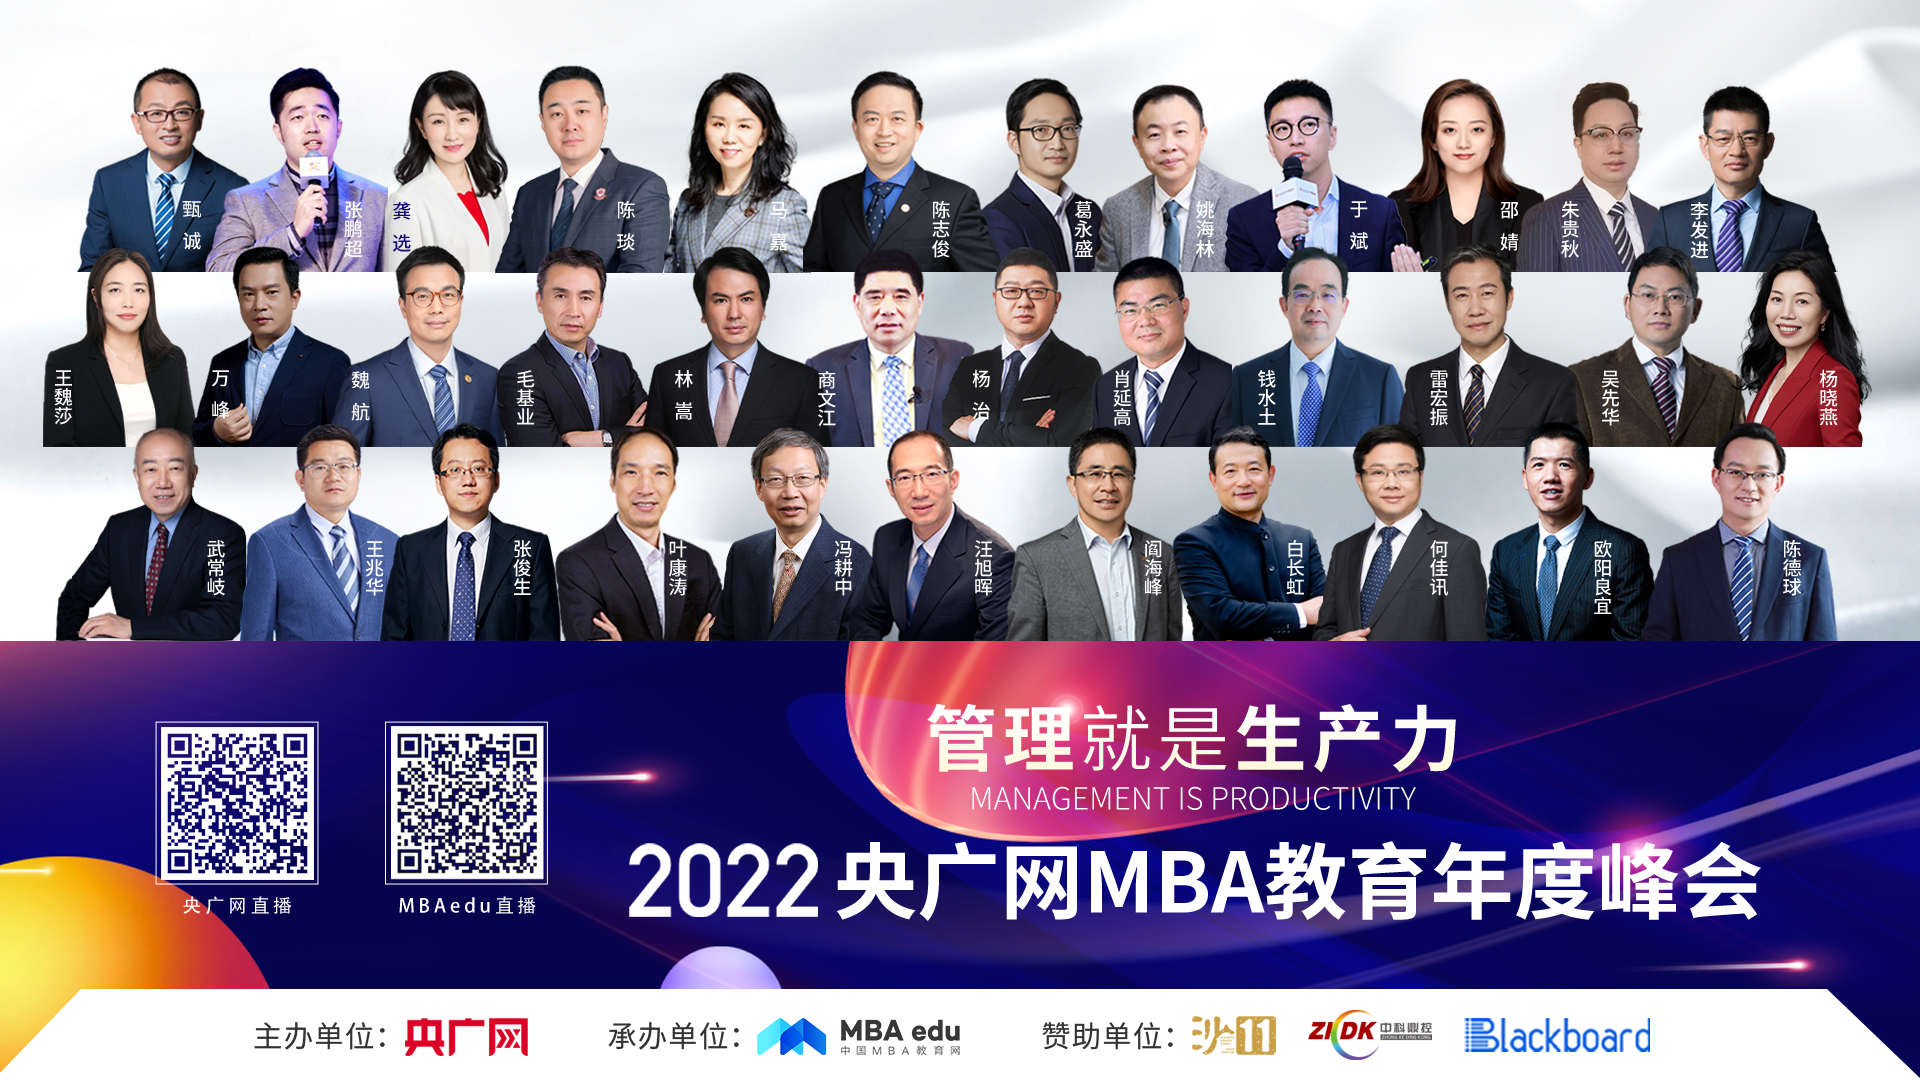 【获奖院校新闻汇总】2022央广网MBA教育年度峰会暨管理就是生产力论坛